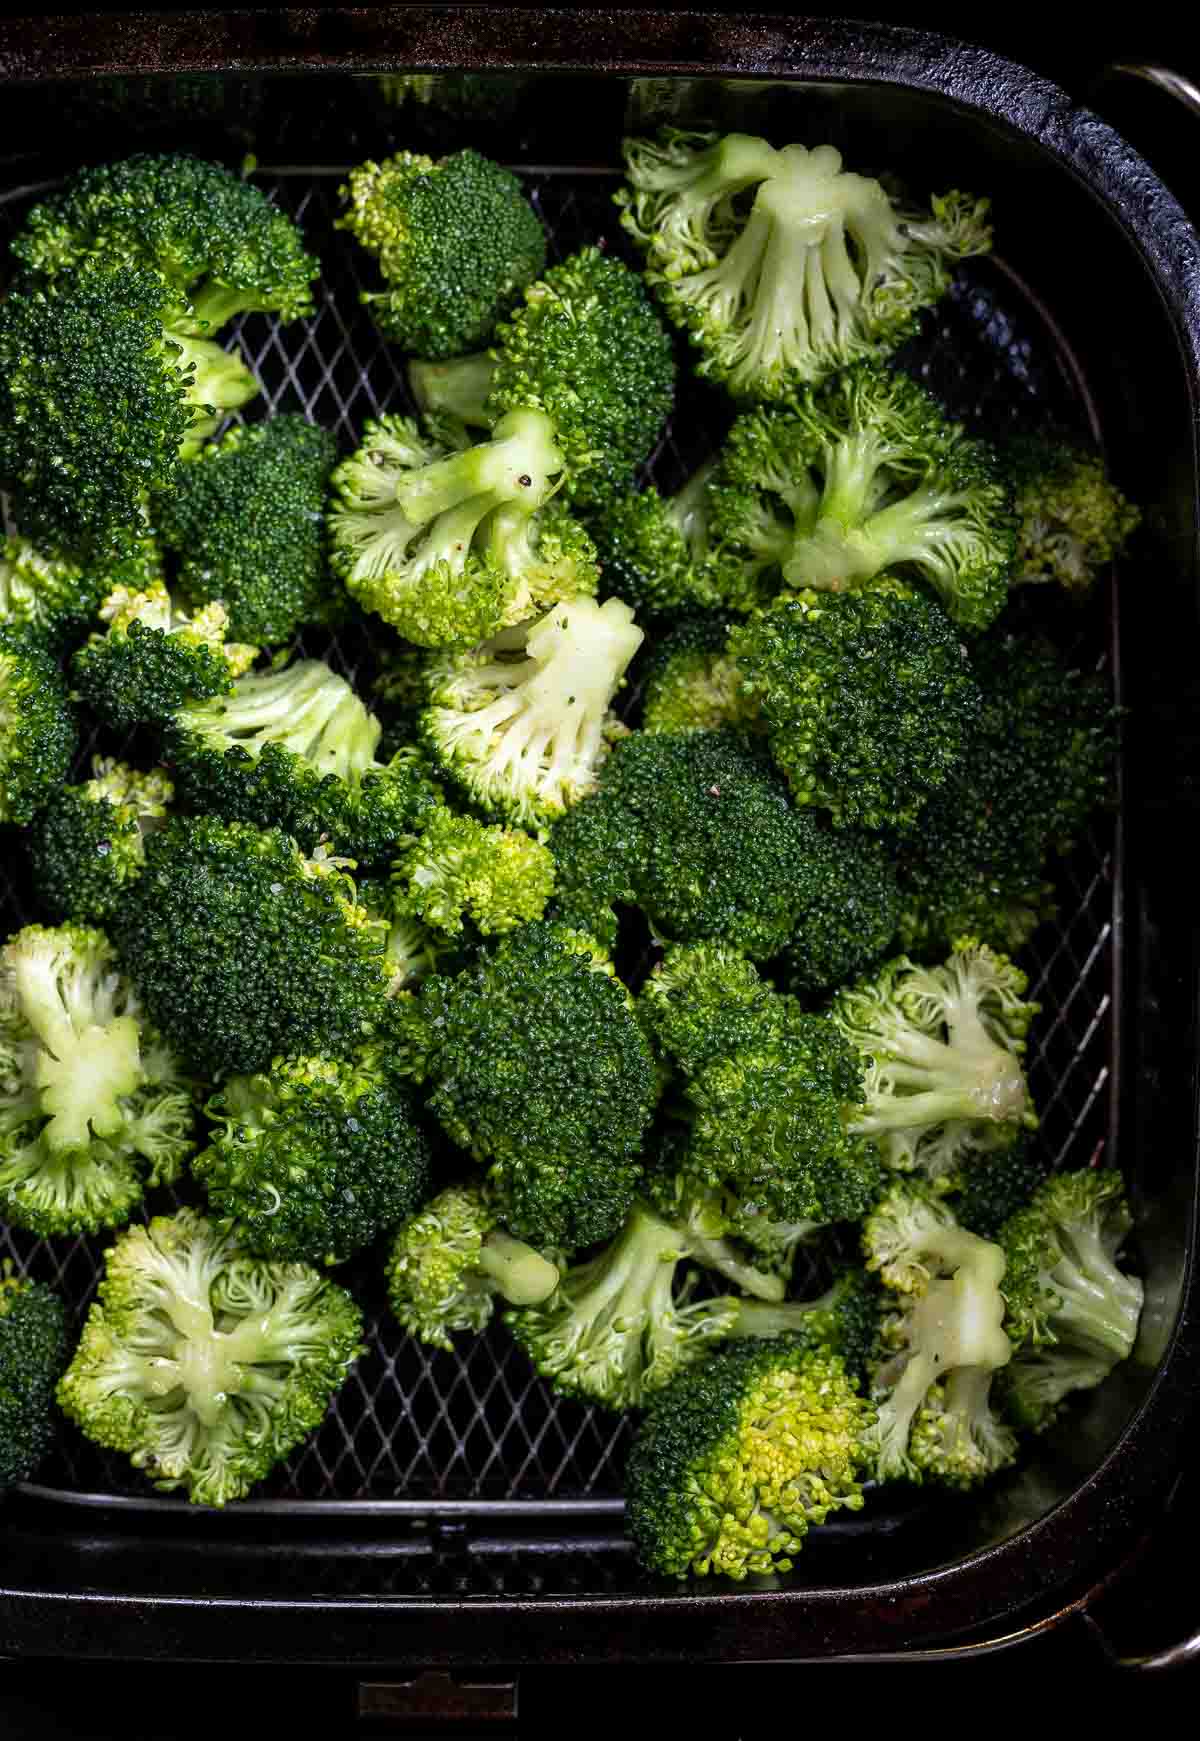 raw broccoli in air fryer basket